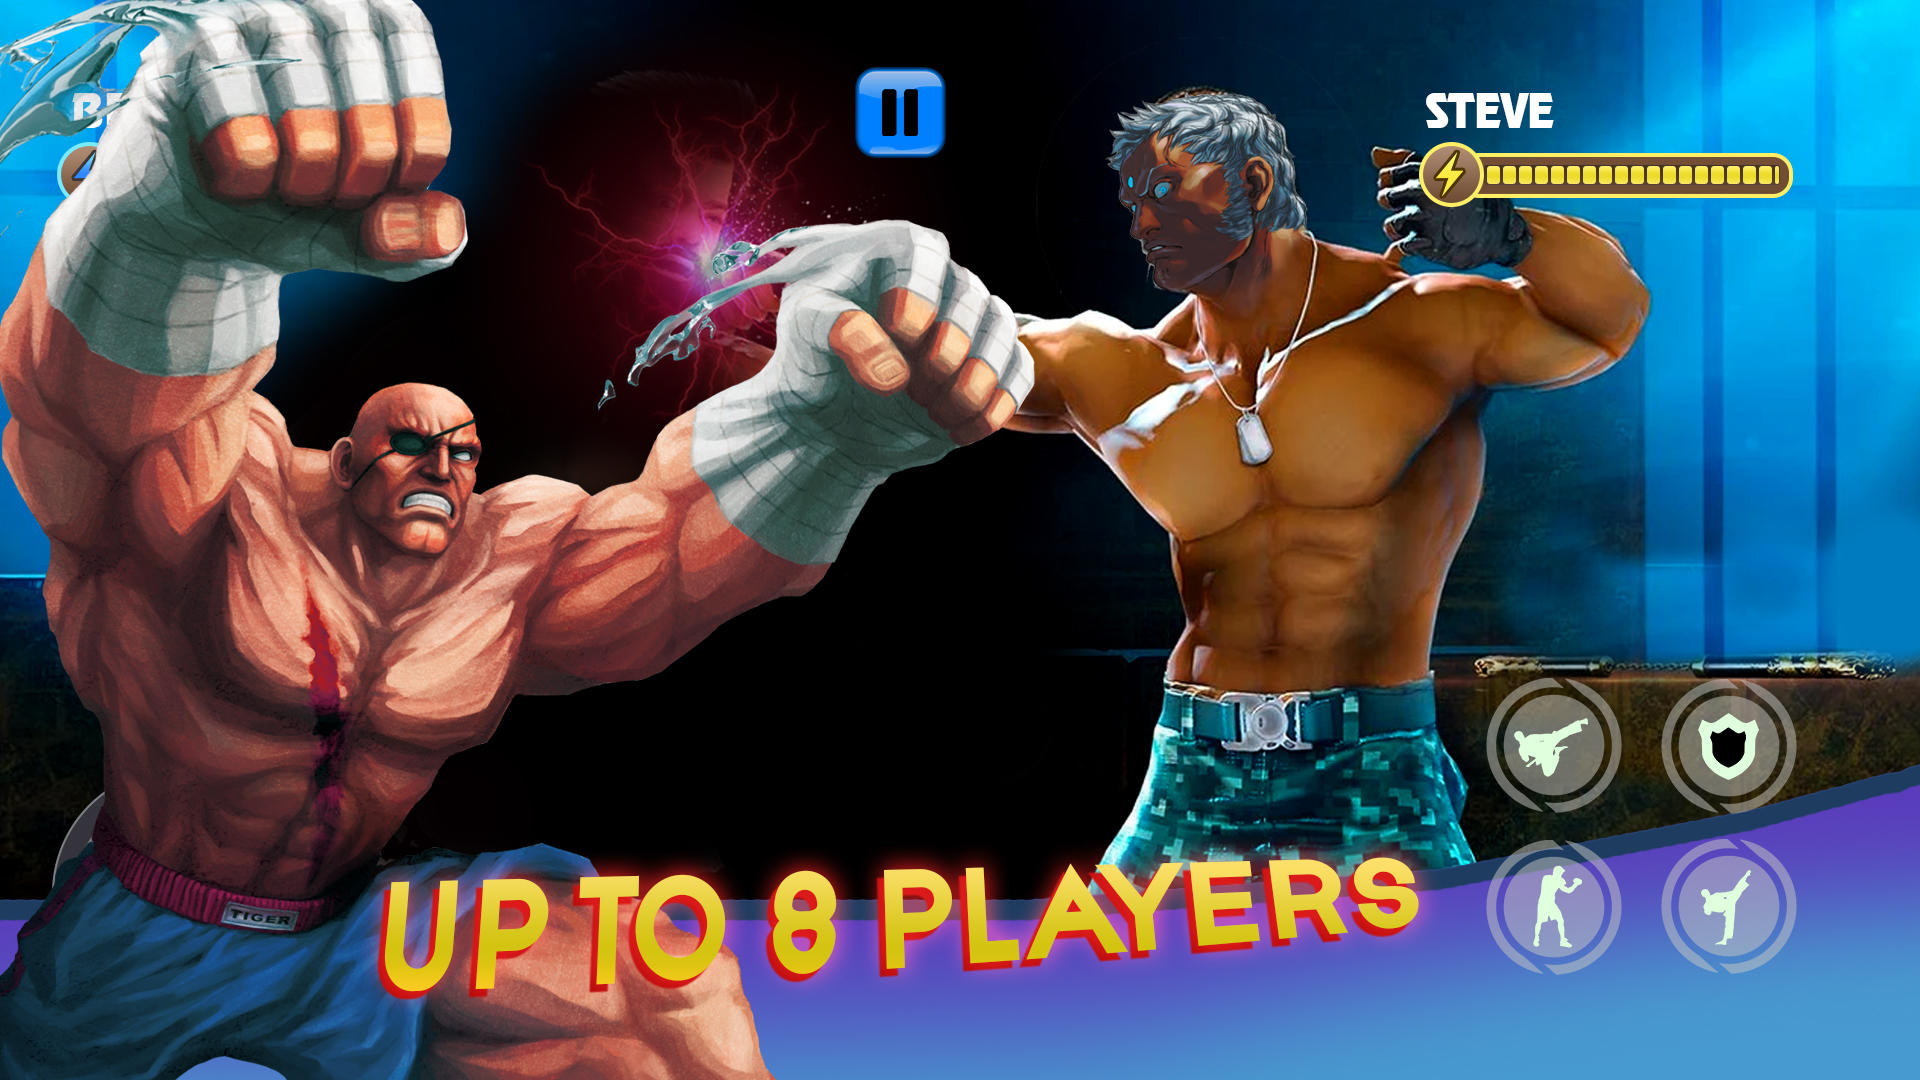 Karate Fighting Game 3D screenshot game